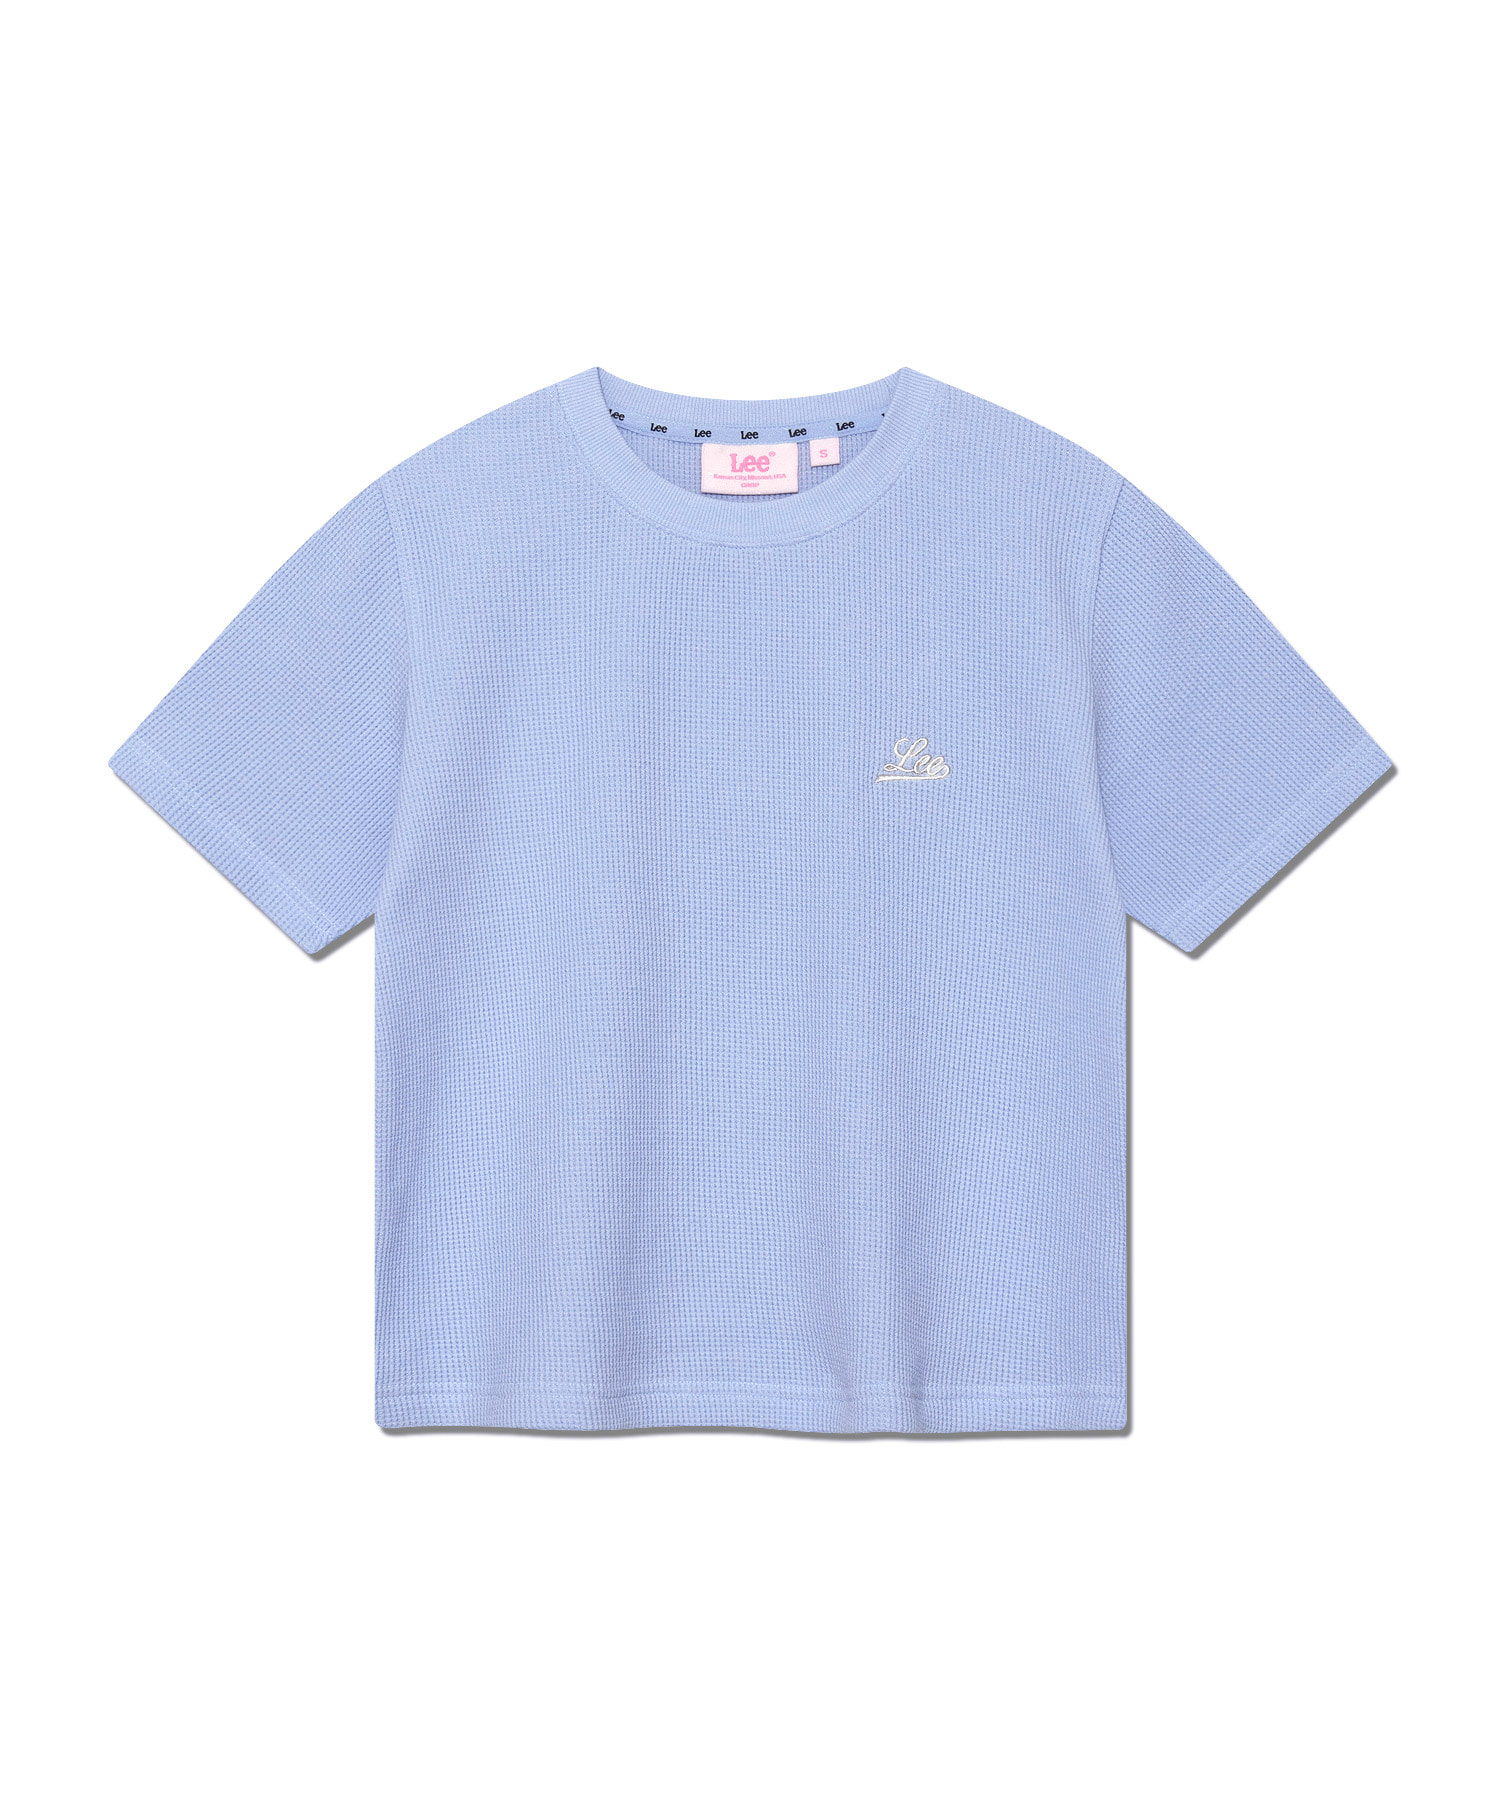 우먼 유니온 로고 와플 티셔츠 라이트 블루